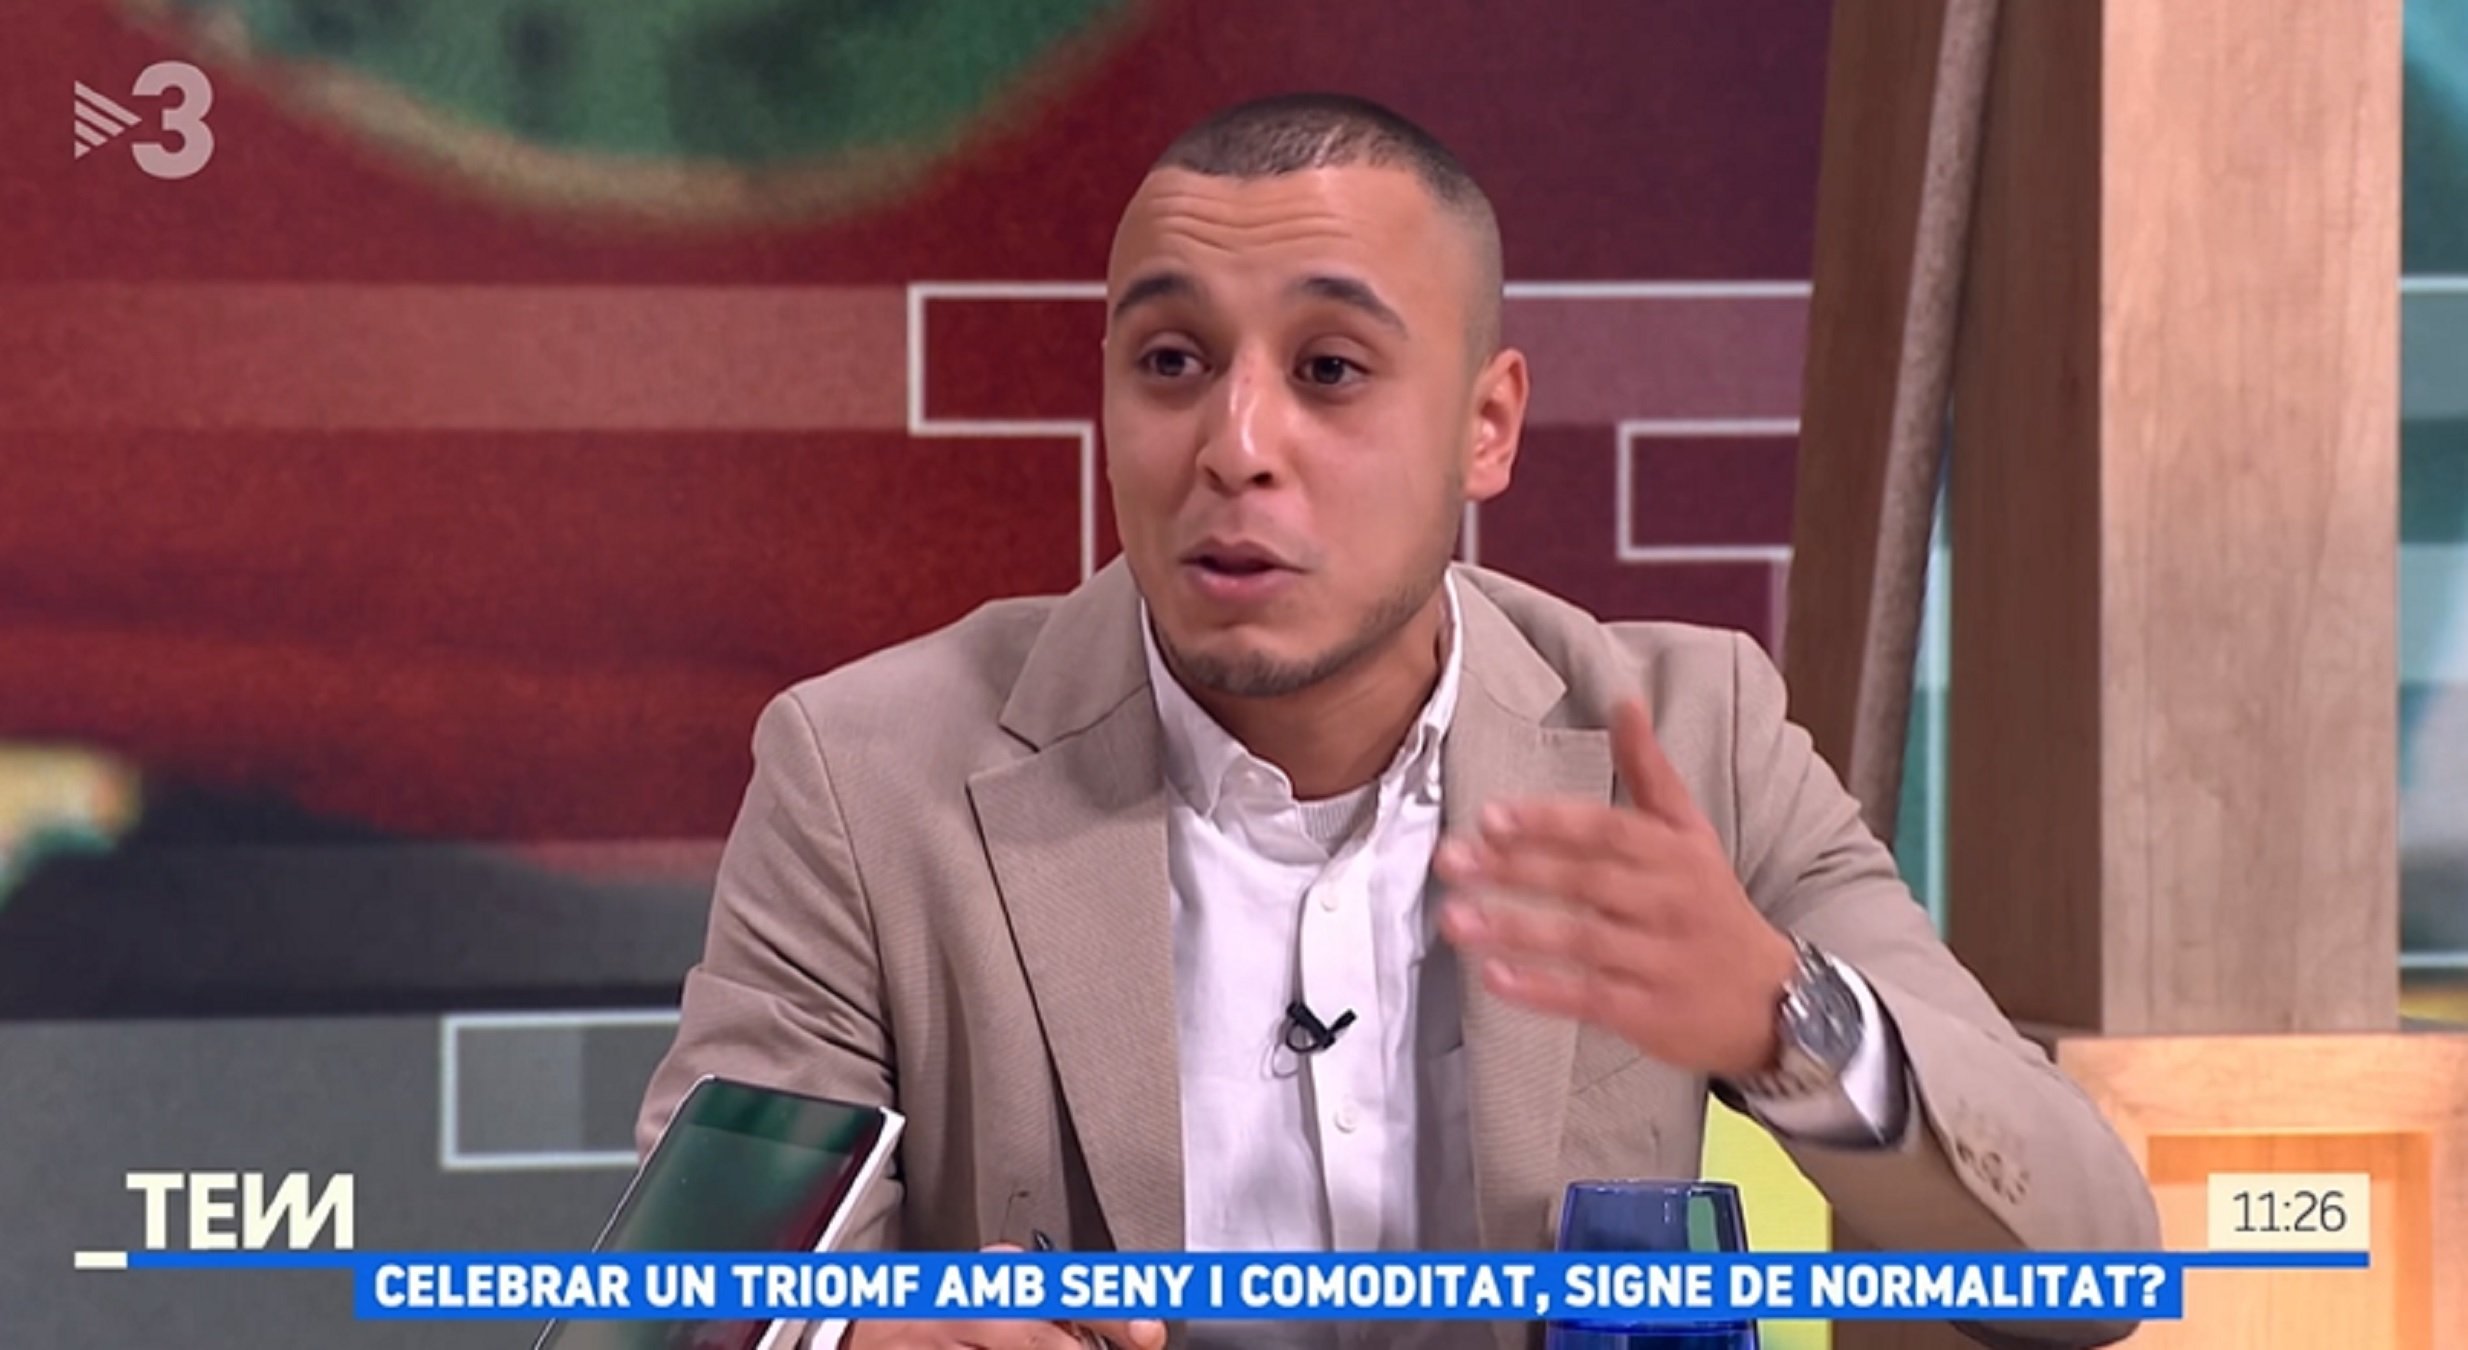 Youssef Joudi, el nuevo Pompeu Fabra de origen marroquí, lo vuelve a hacer: habla un catalán inmaculado en TV3